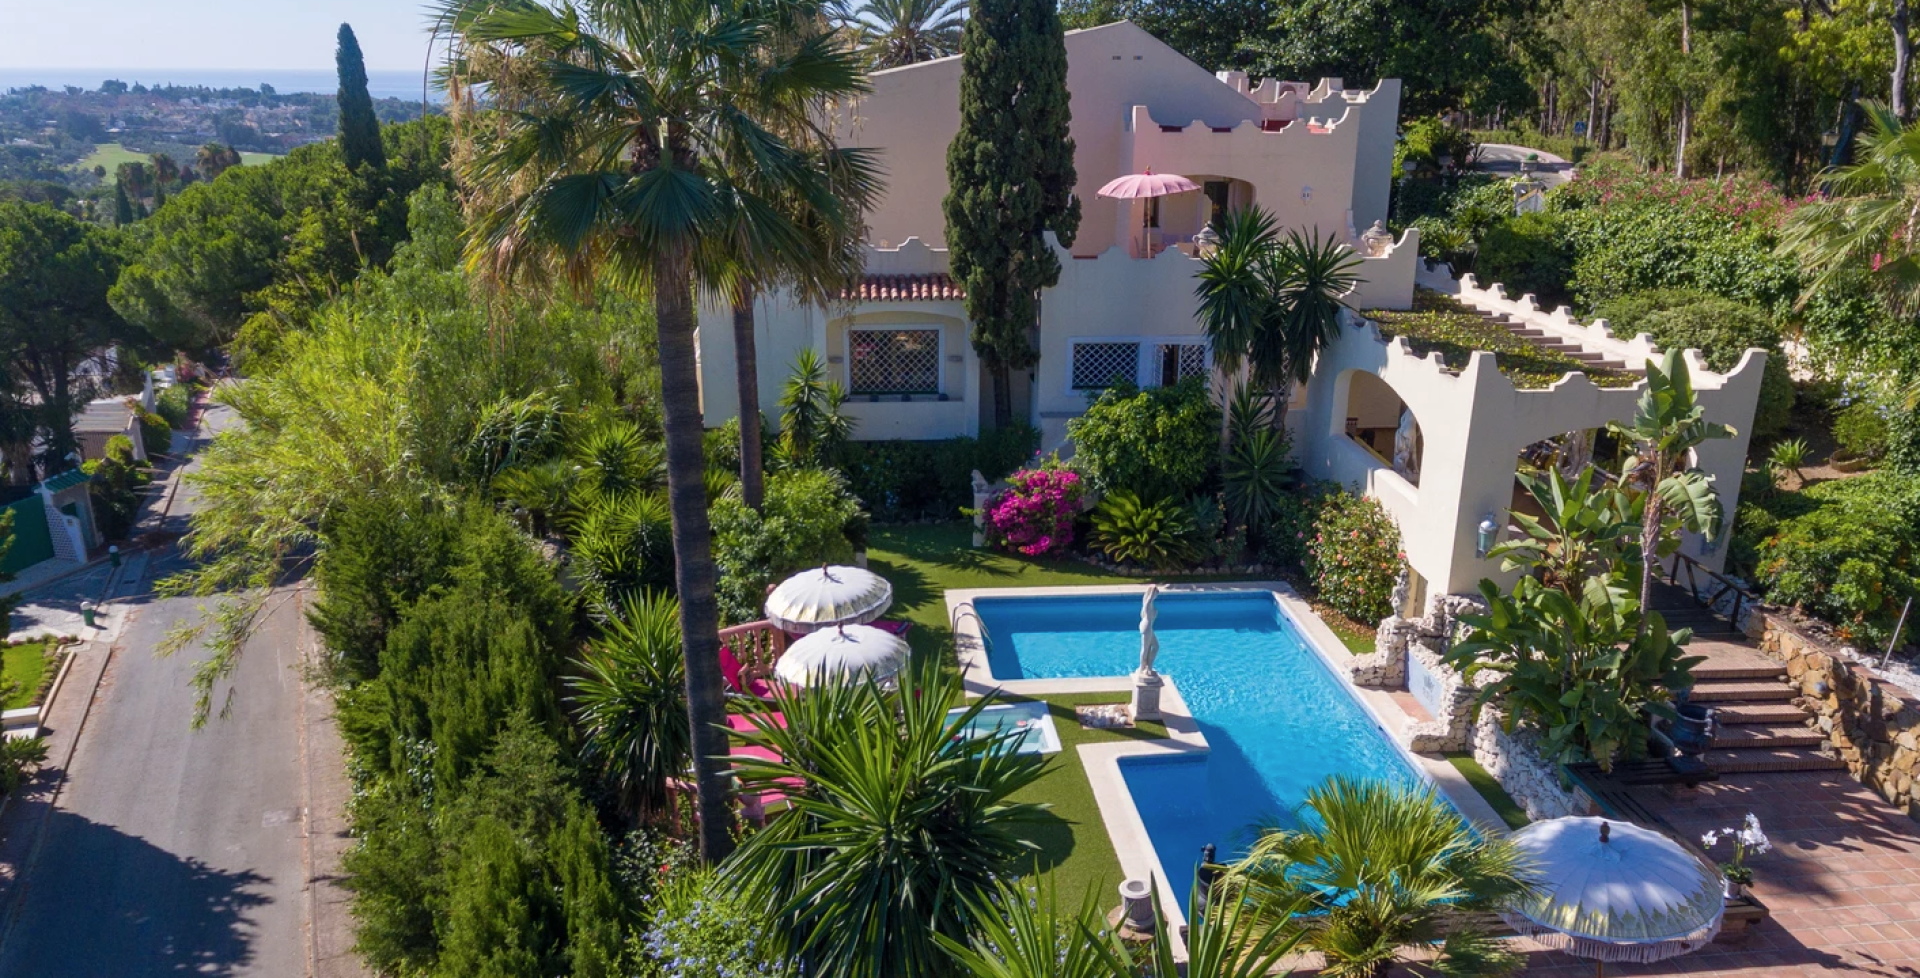 Villa Exce Marbella 7 bedrooms pool and gardens